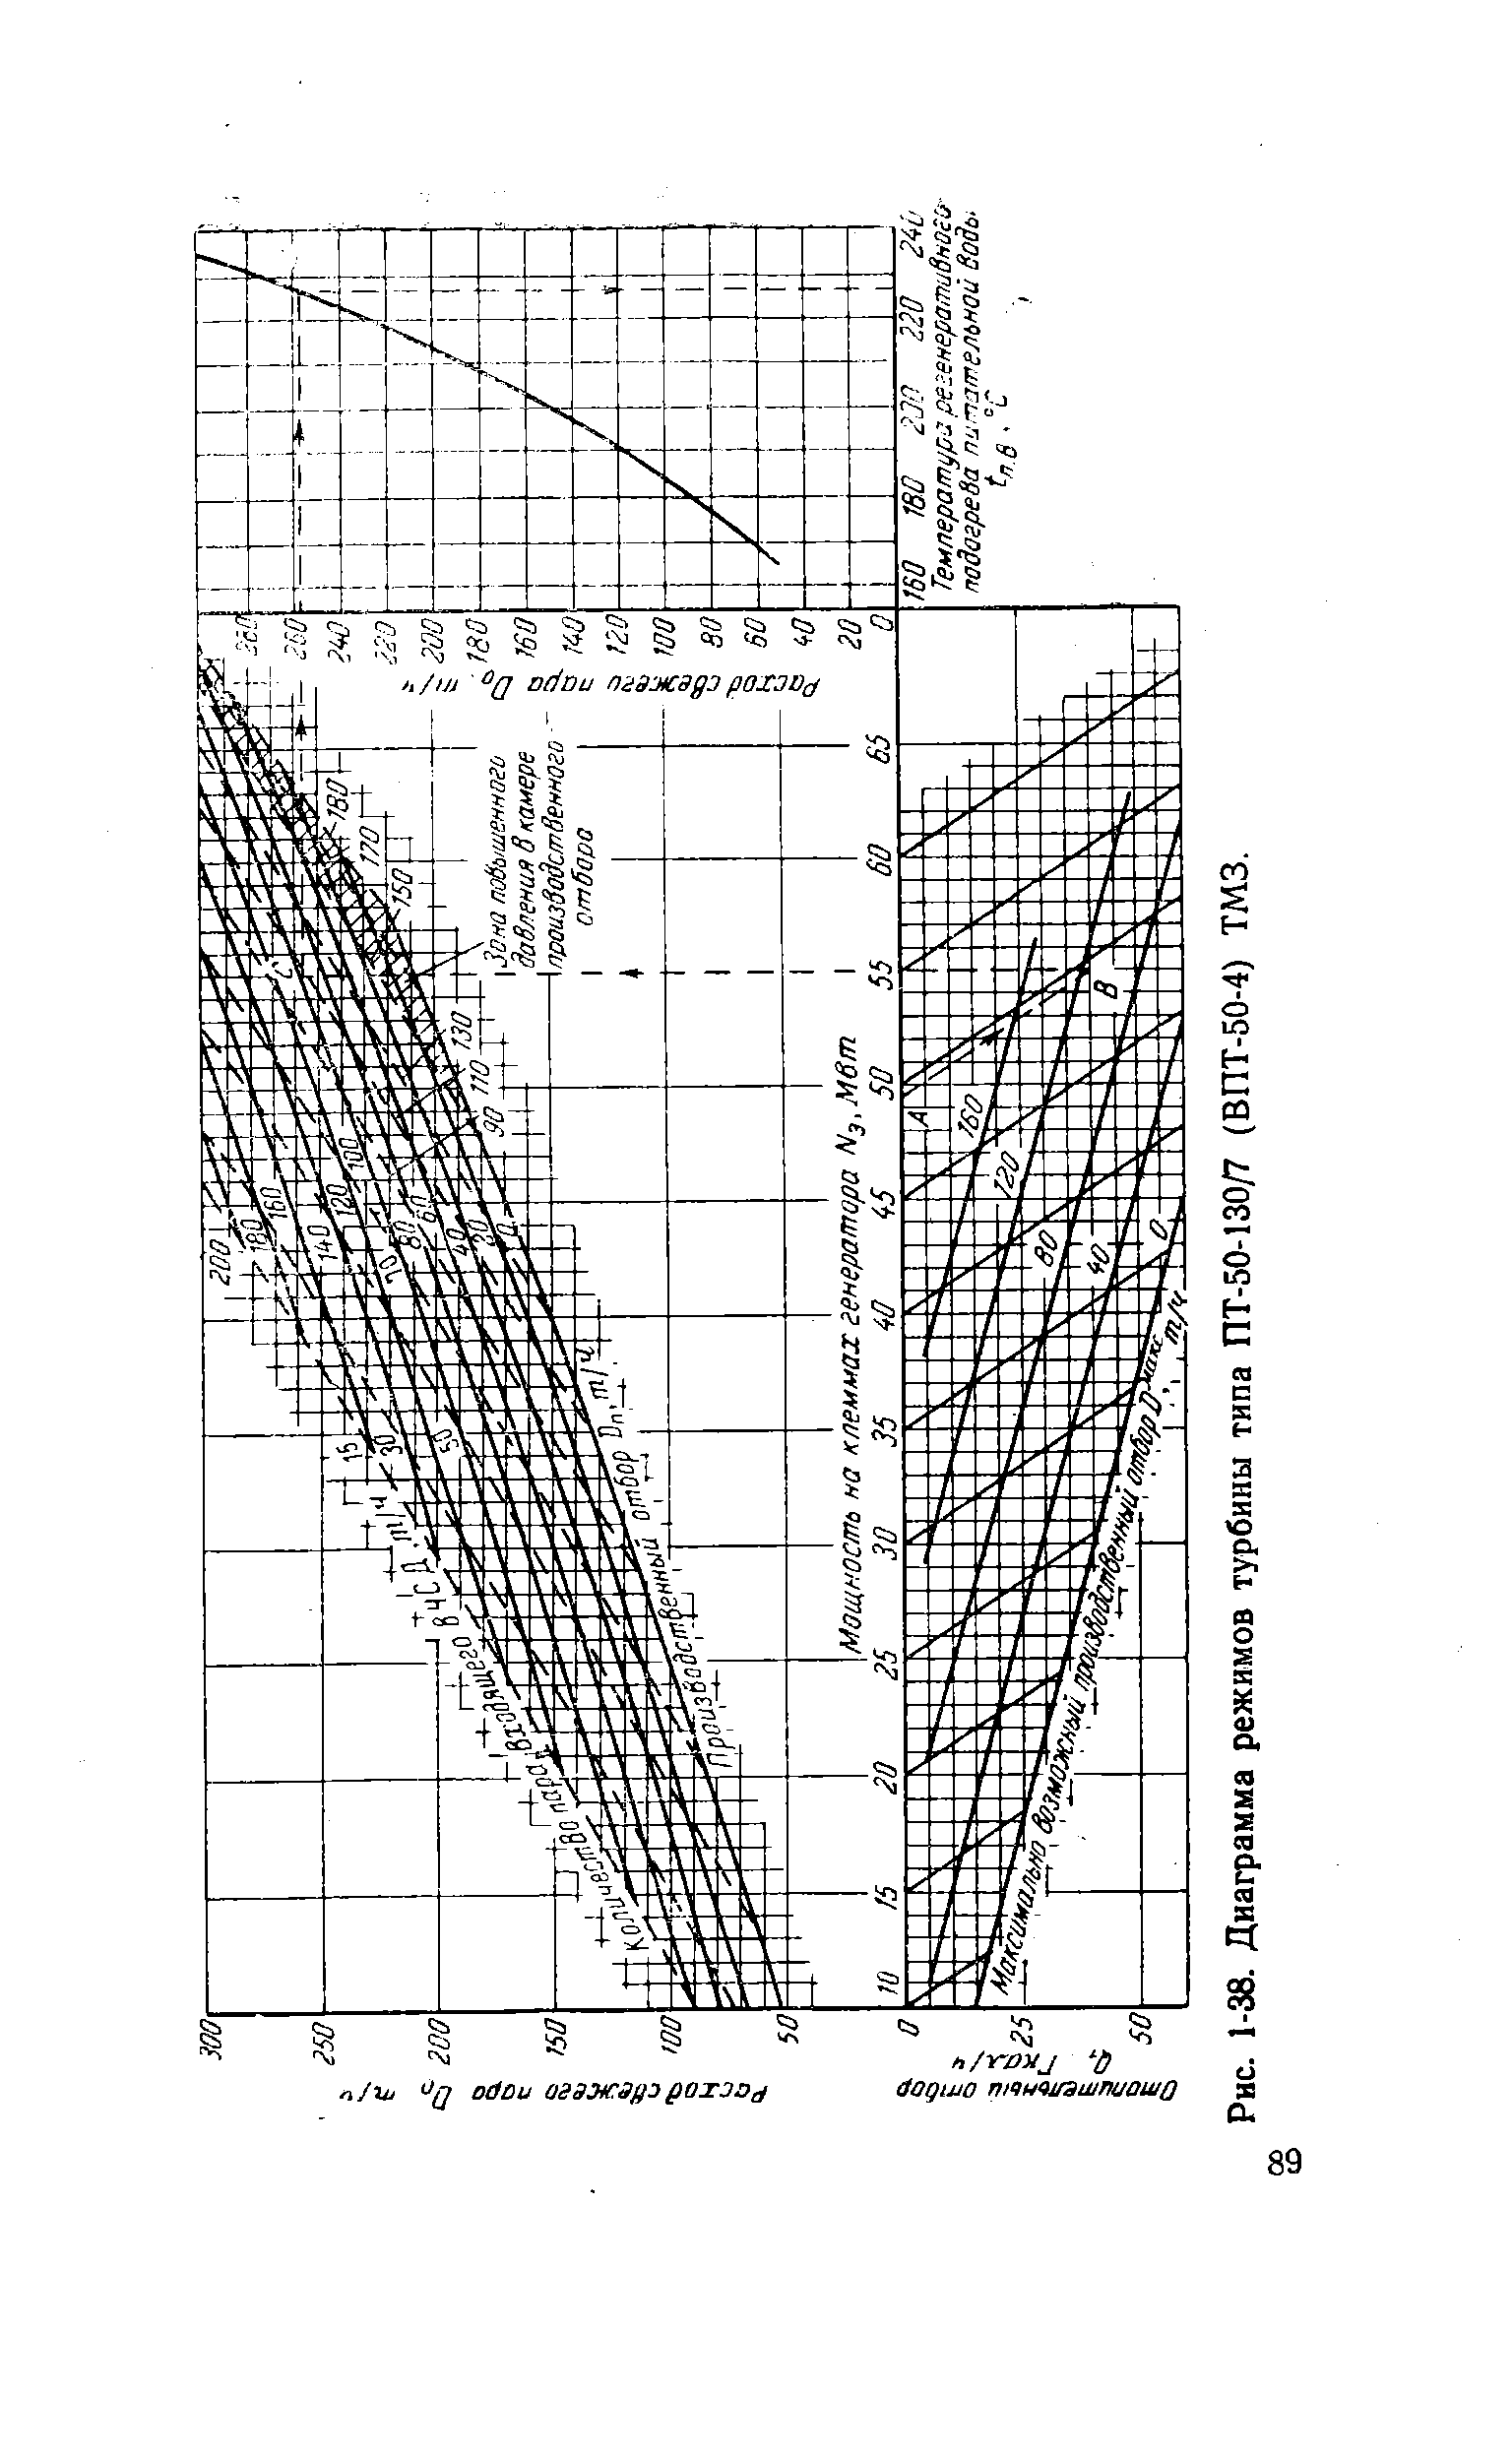 Рис. 1-38. Диаграмма режимов турбины типа ПТ-50-130/7 (ВПТ-50-4) ТМЗ.
